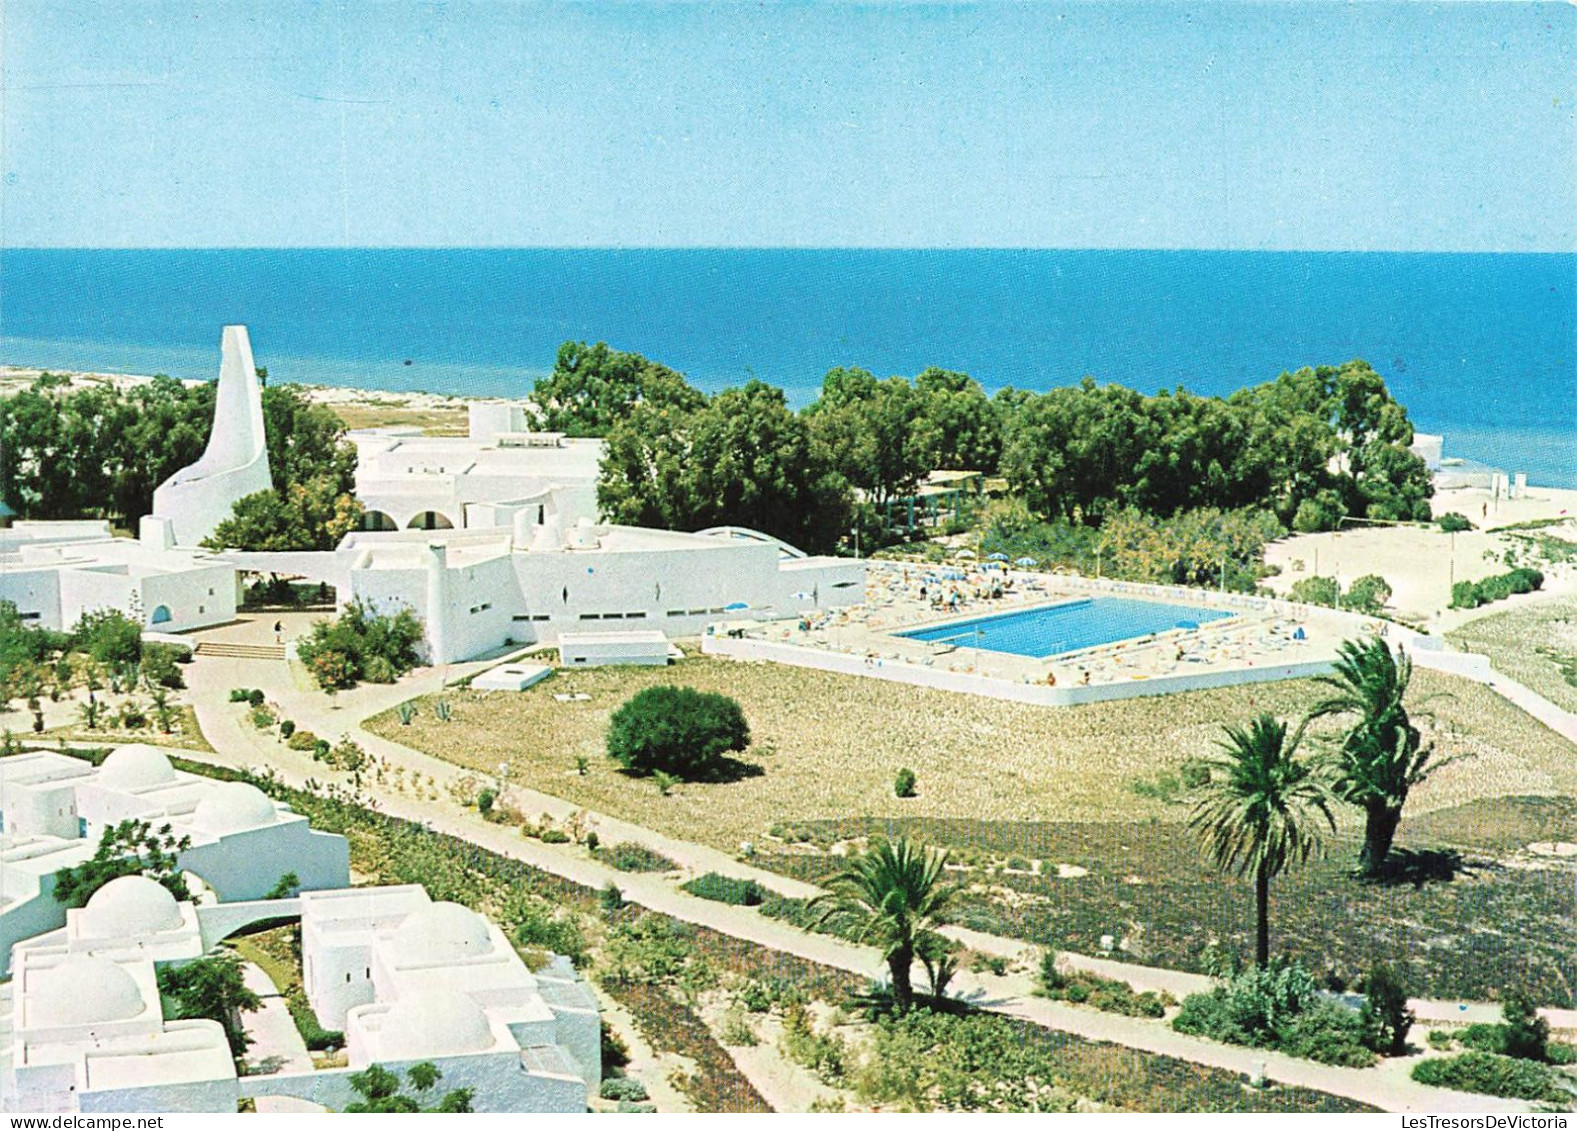 TUNISIE  - Residence Club De Skanes - Vue Générale - De L'extérieure - Carte Postale - Tunisia